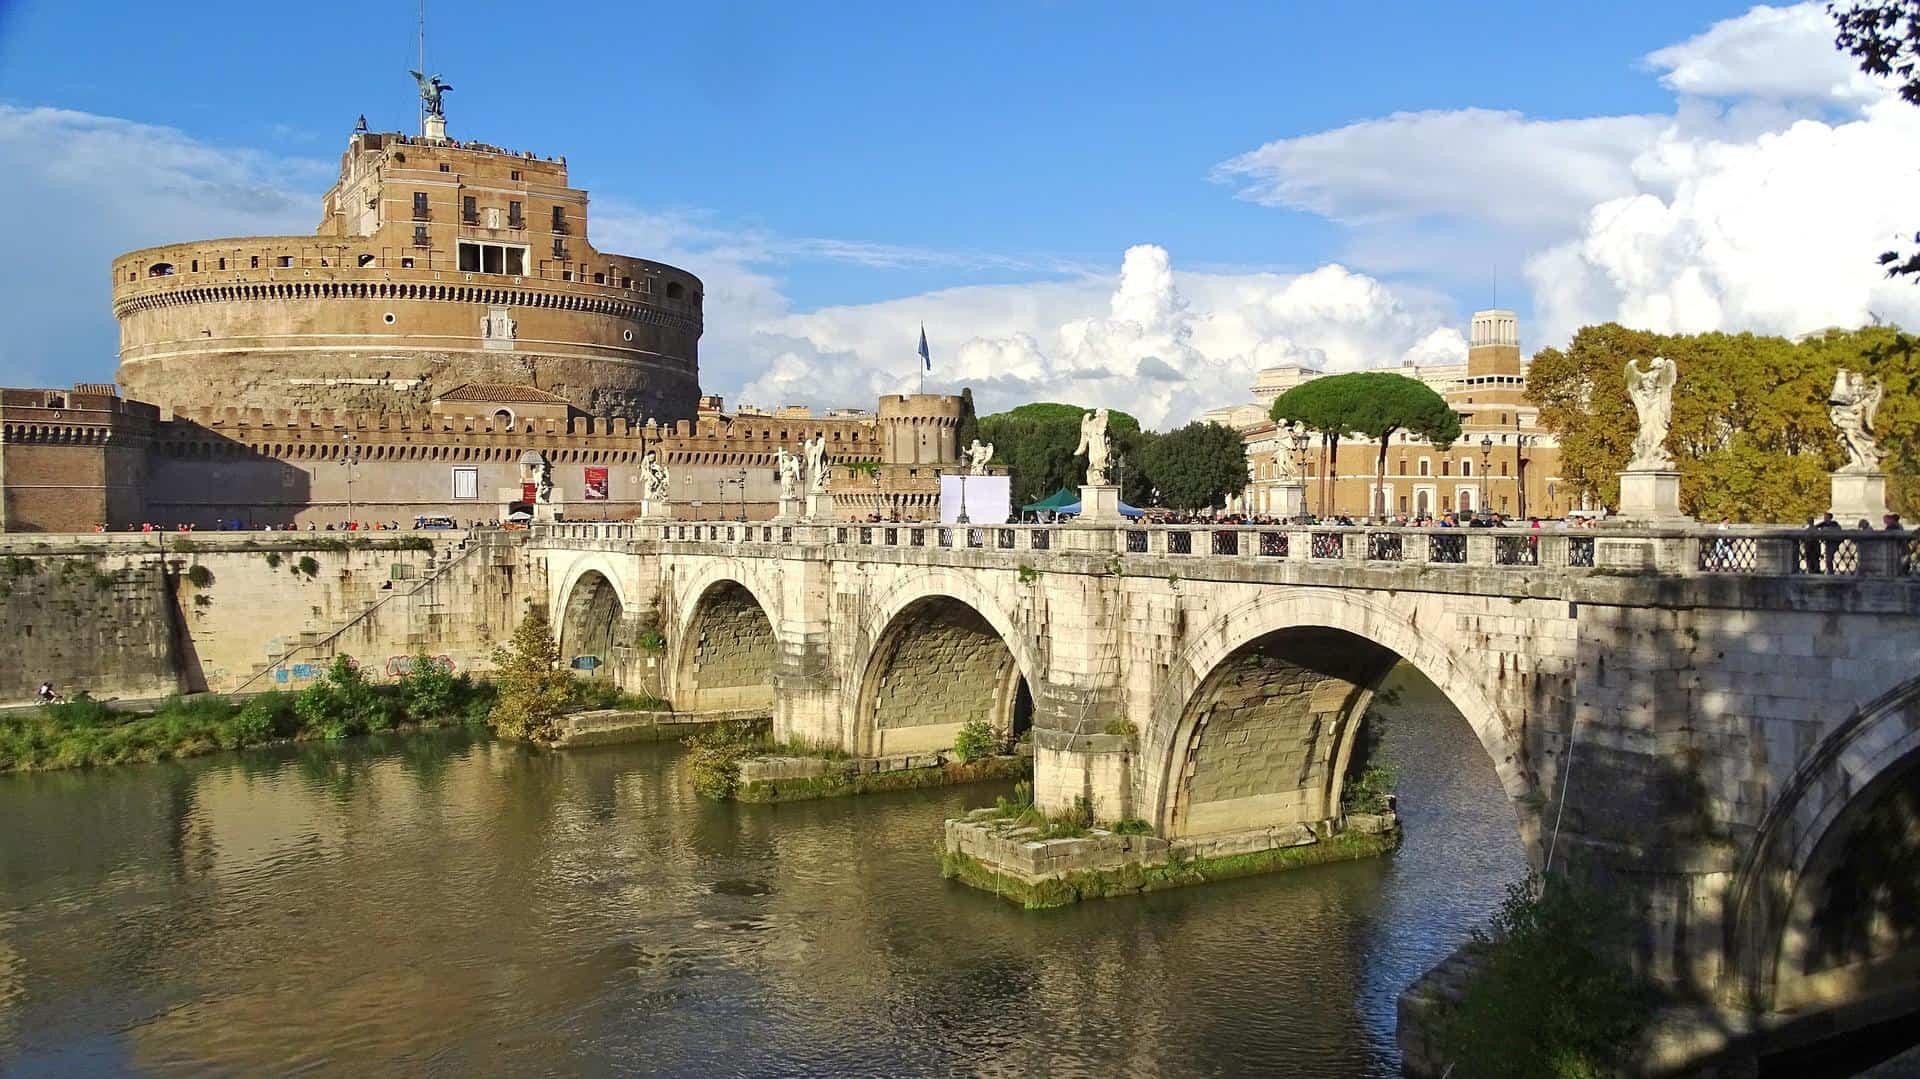 Bridge leading to Castel Sant’Angelo